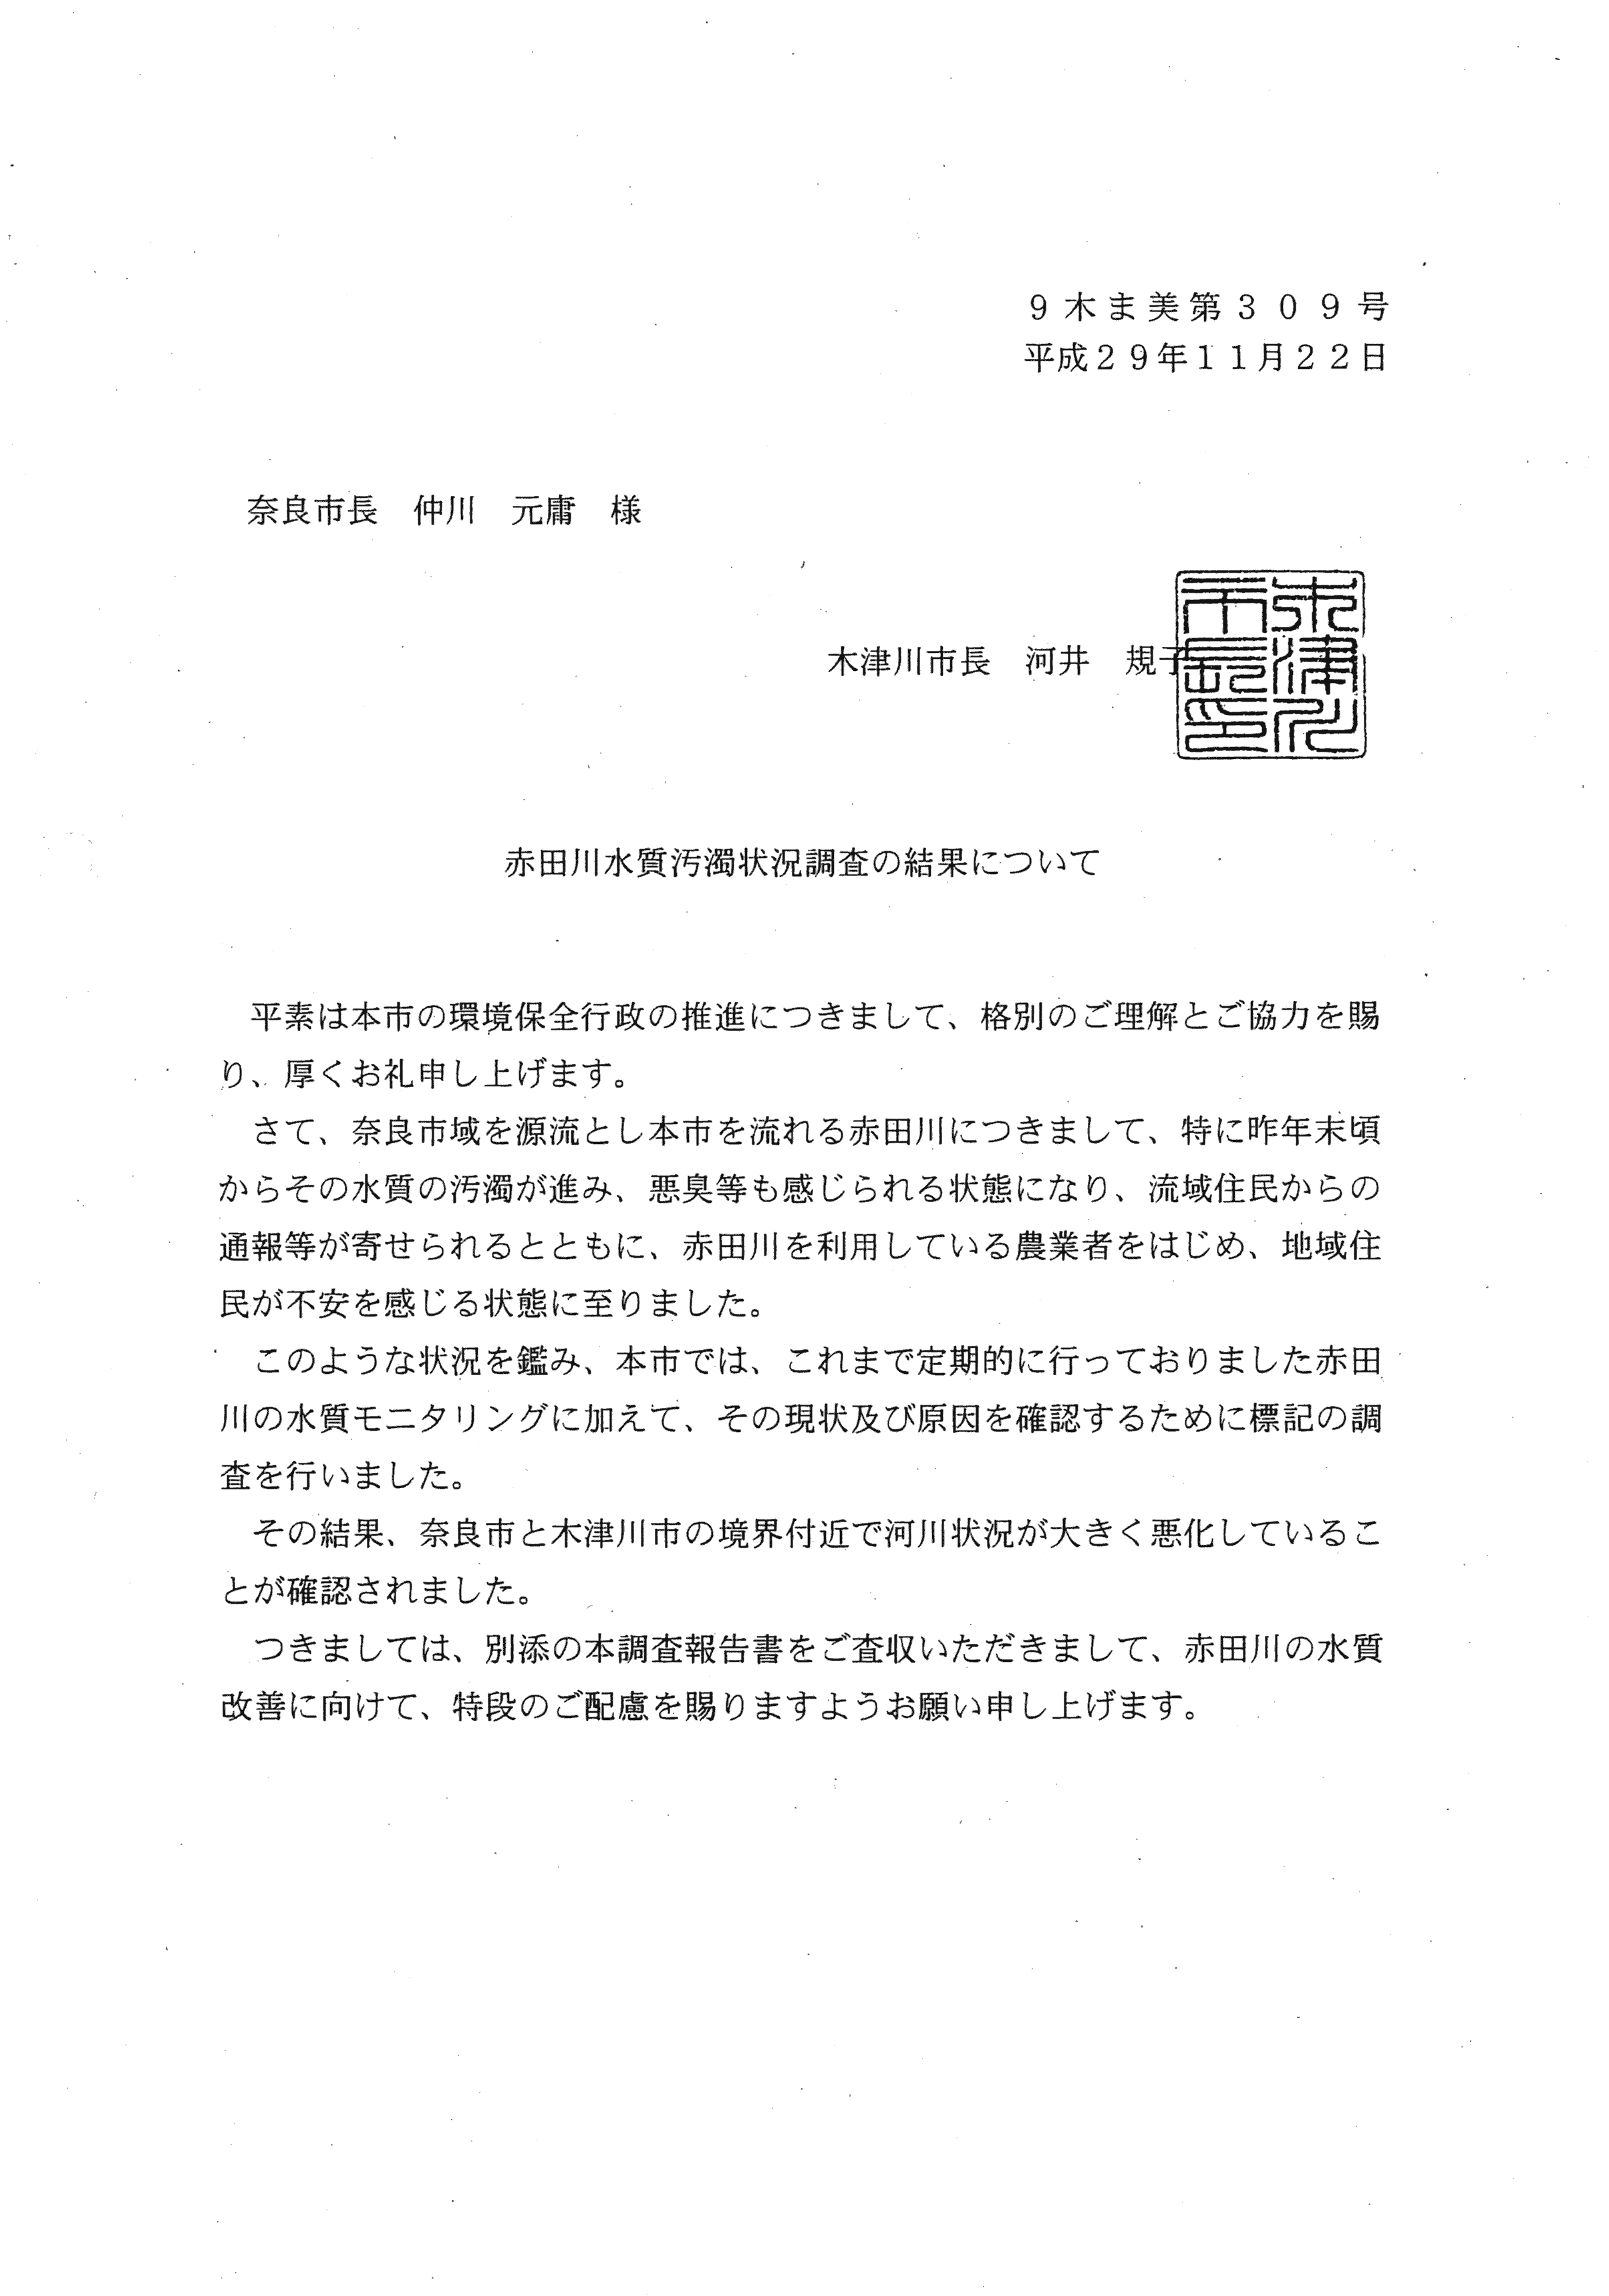 平成29年11月22日-赤田川水質汚濁状況調査の結果について（奈良市長宛）